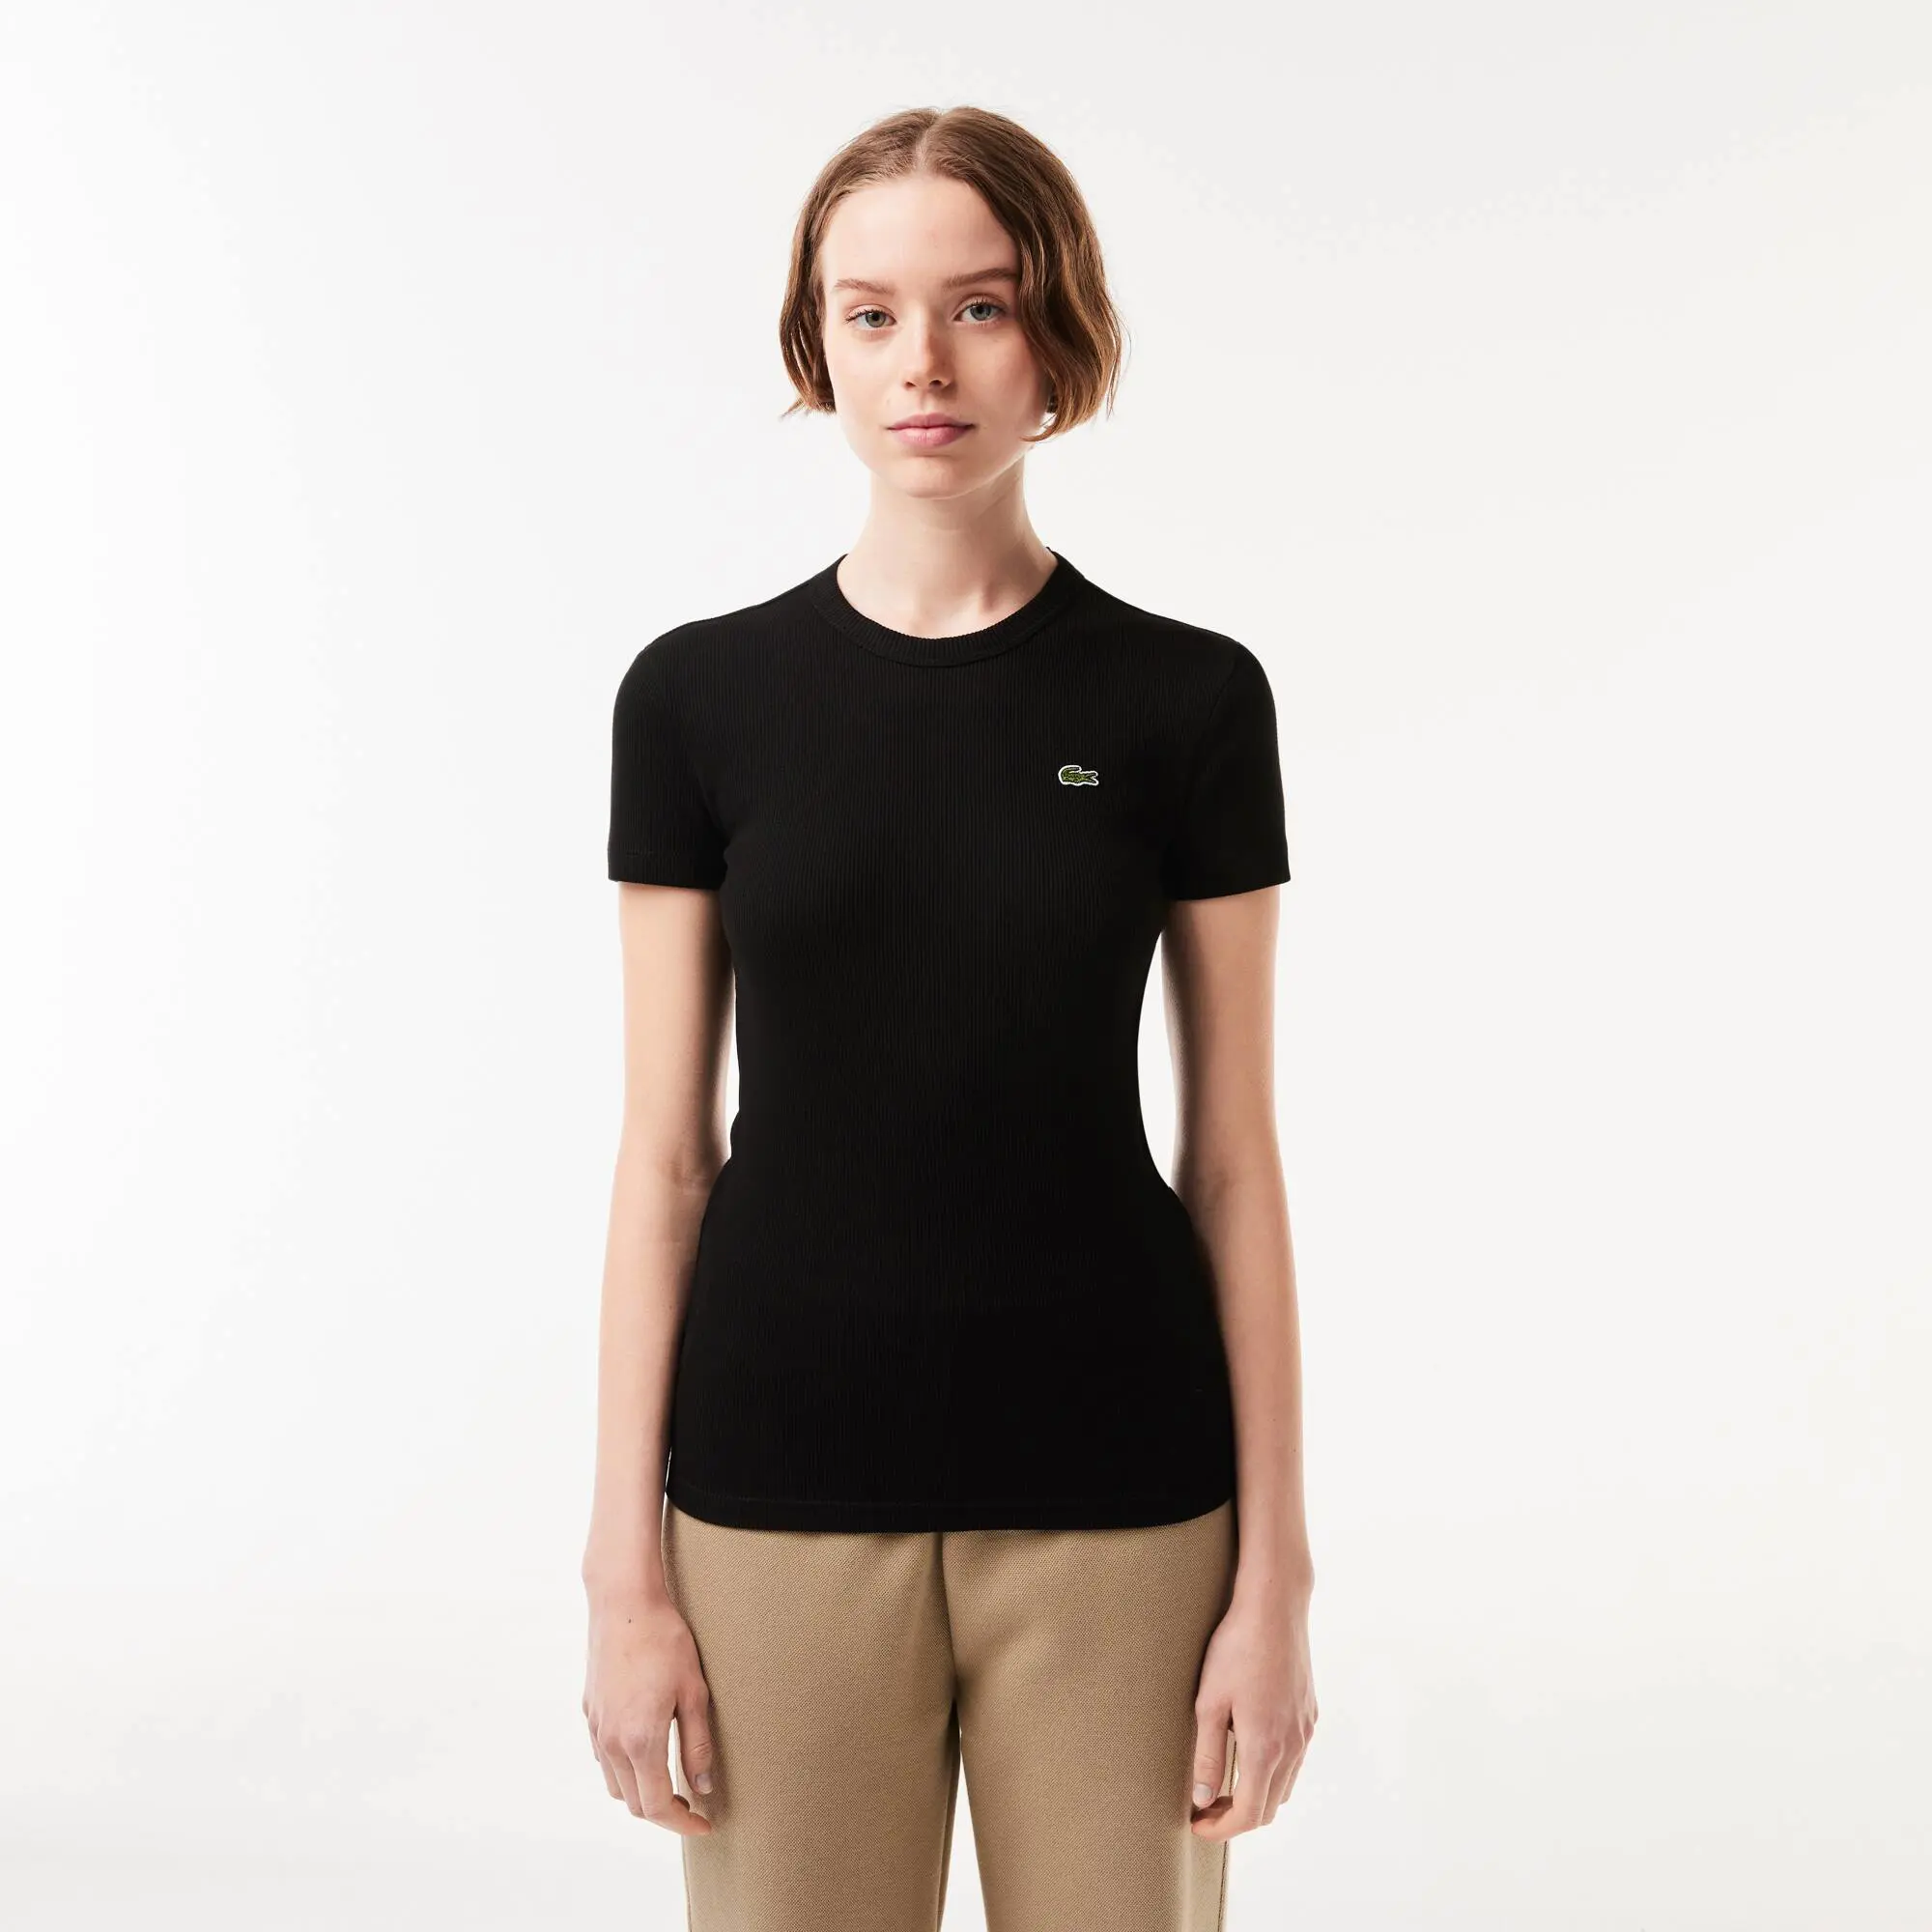 Lacoste Women’s Slim Fit Organic Cotton T-shirt. 1